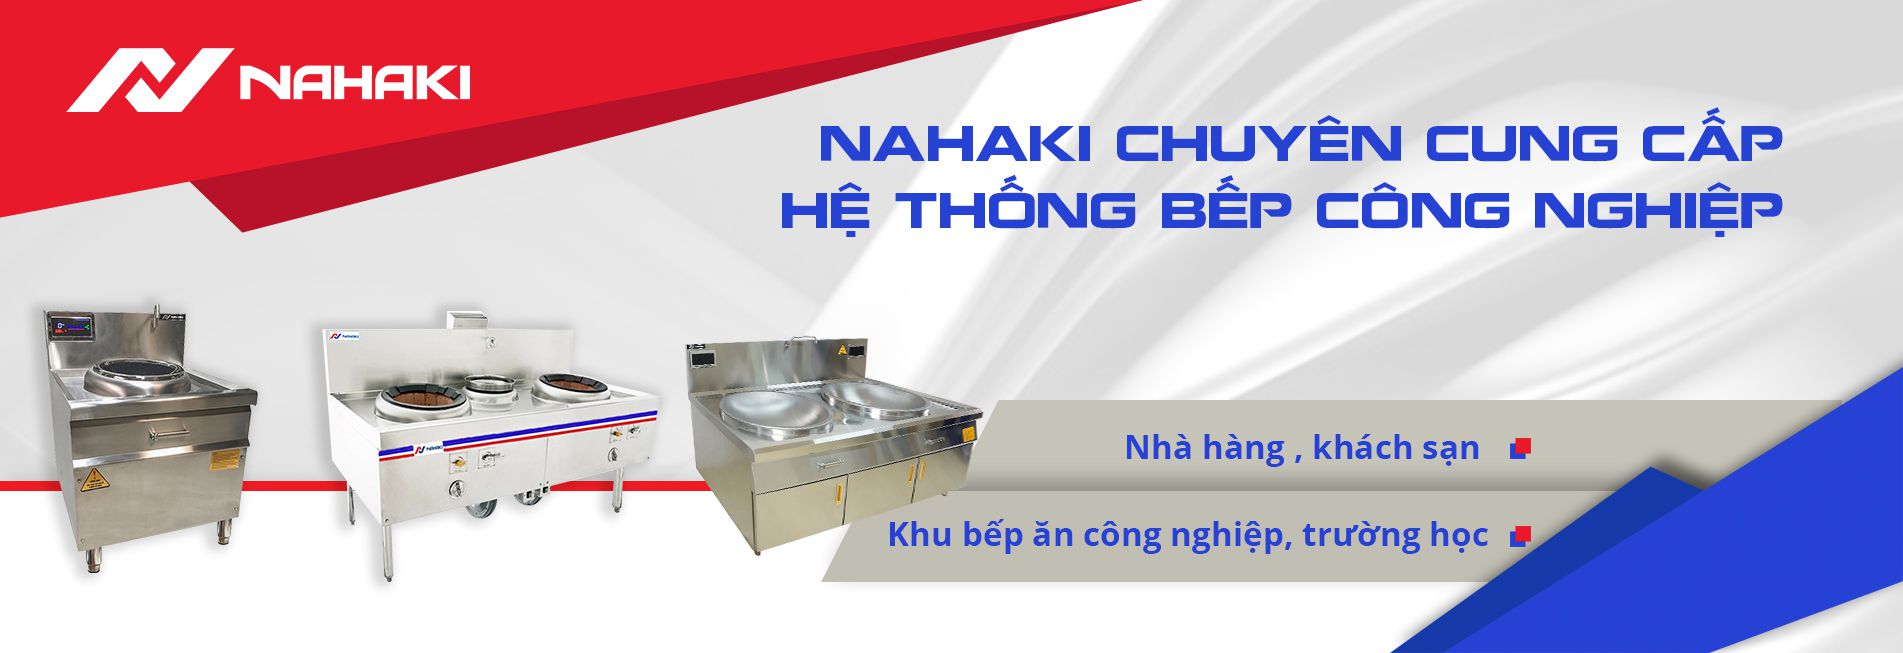 Nahaki - đơn vị cung cấp bếp công nghiệp uy tín hàng đầu